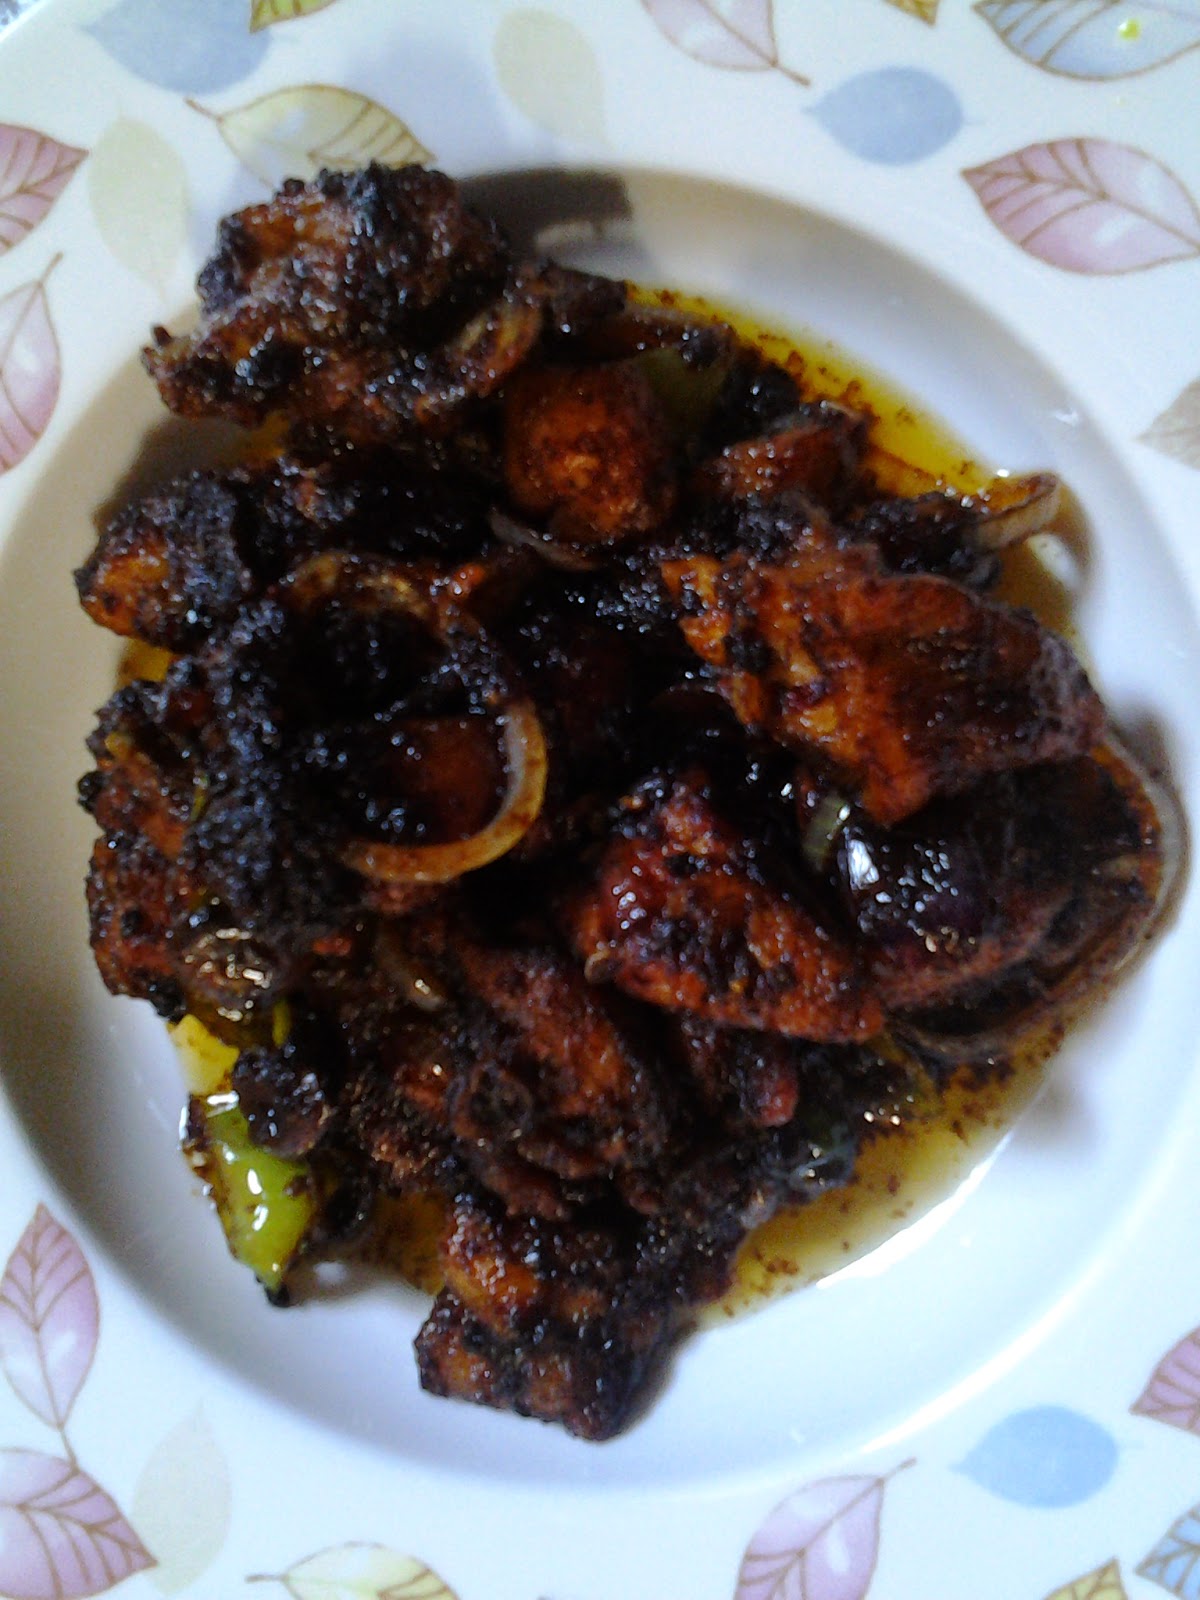 Resepi mudah: ayam masak kicap lada hitam